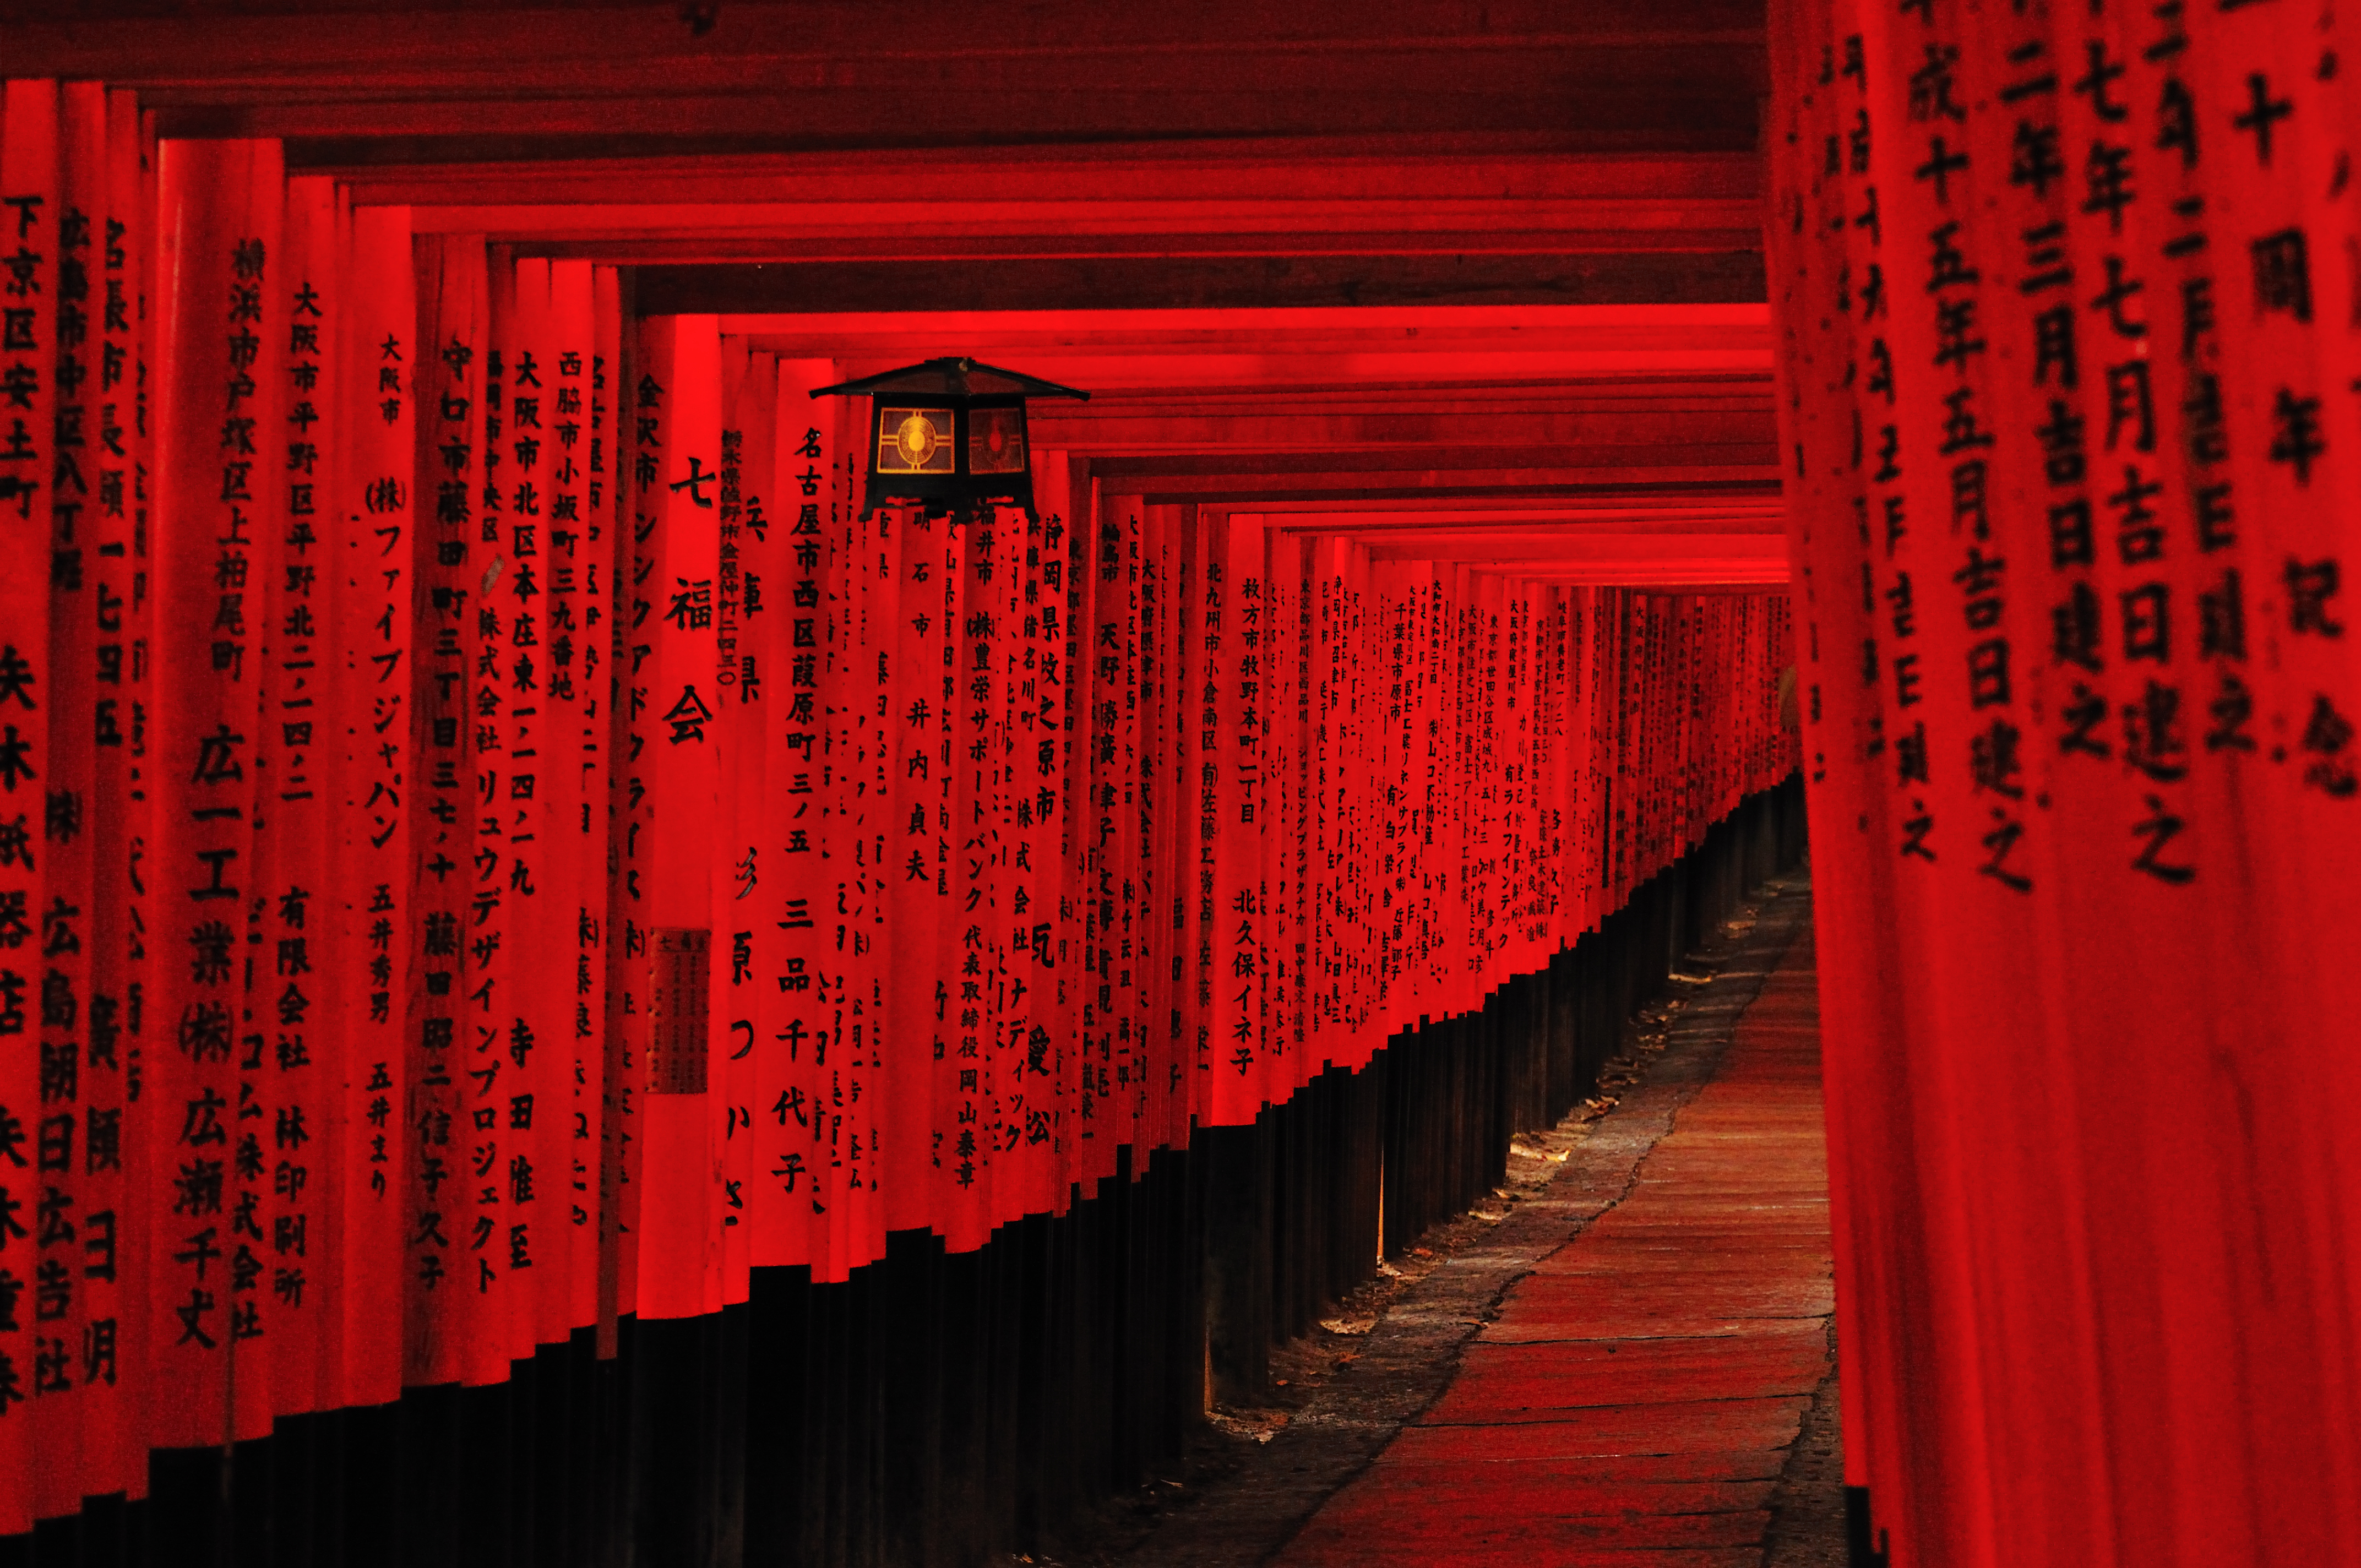 フリー画像 人工風景 神社 仏閣 寺院 伏見稲荷大社 鳥居 日本風景 京都 赤色 レッド フリー素材 画像素材なら 無料 フリー写真素材のフリーフォト